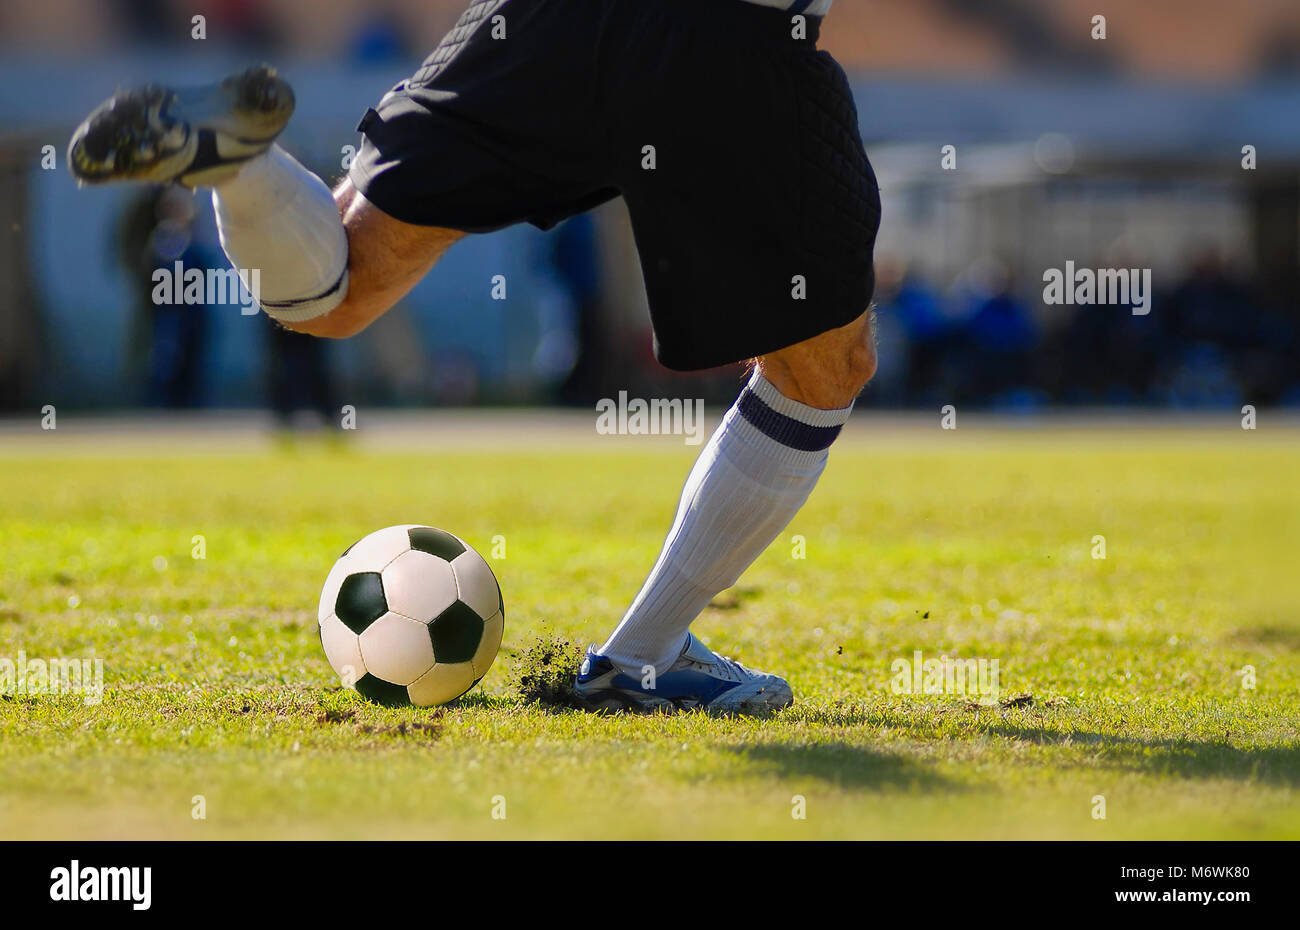 Jugador de fútbol portero patear el balón durante el partido de fútbol Foto de stock